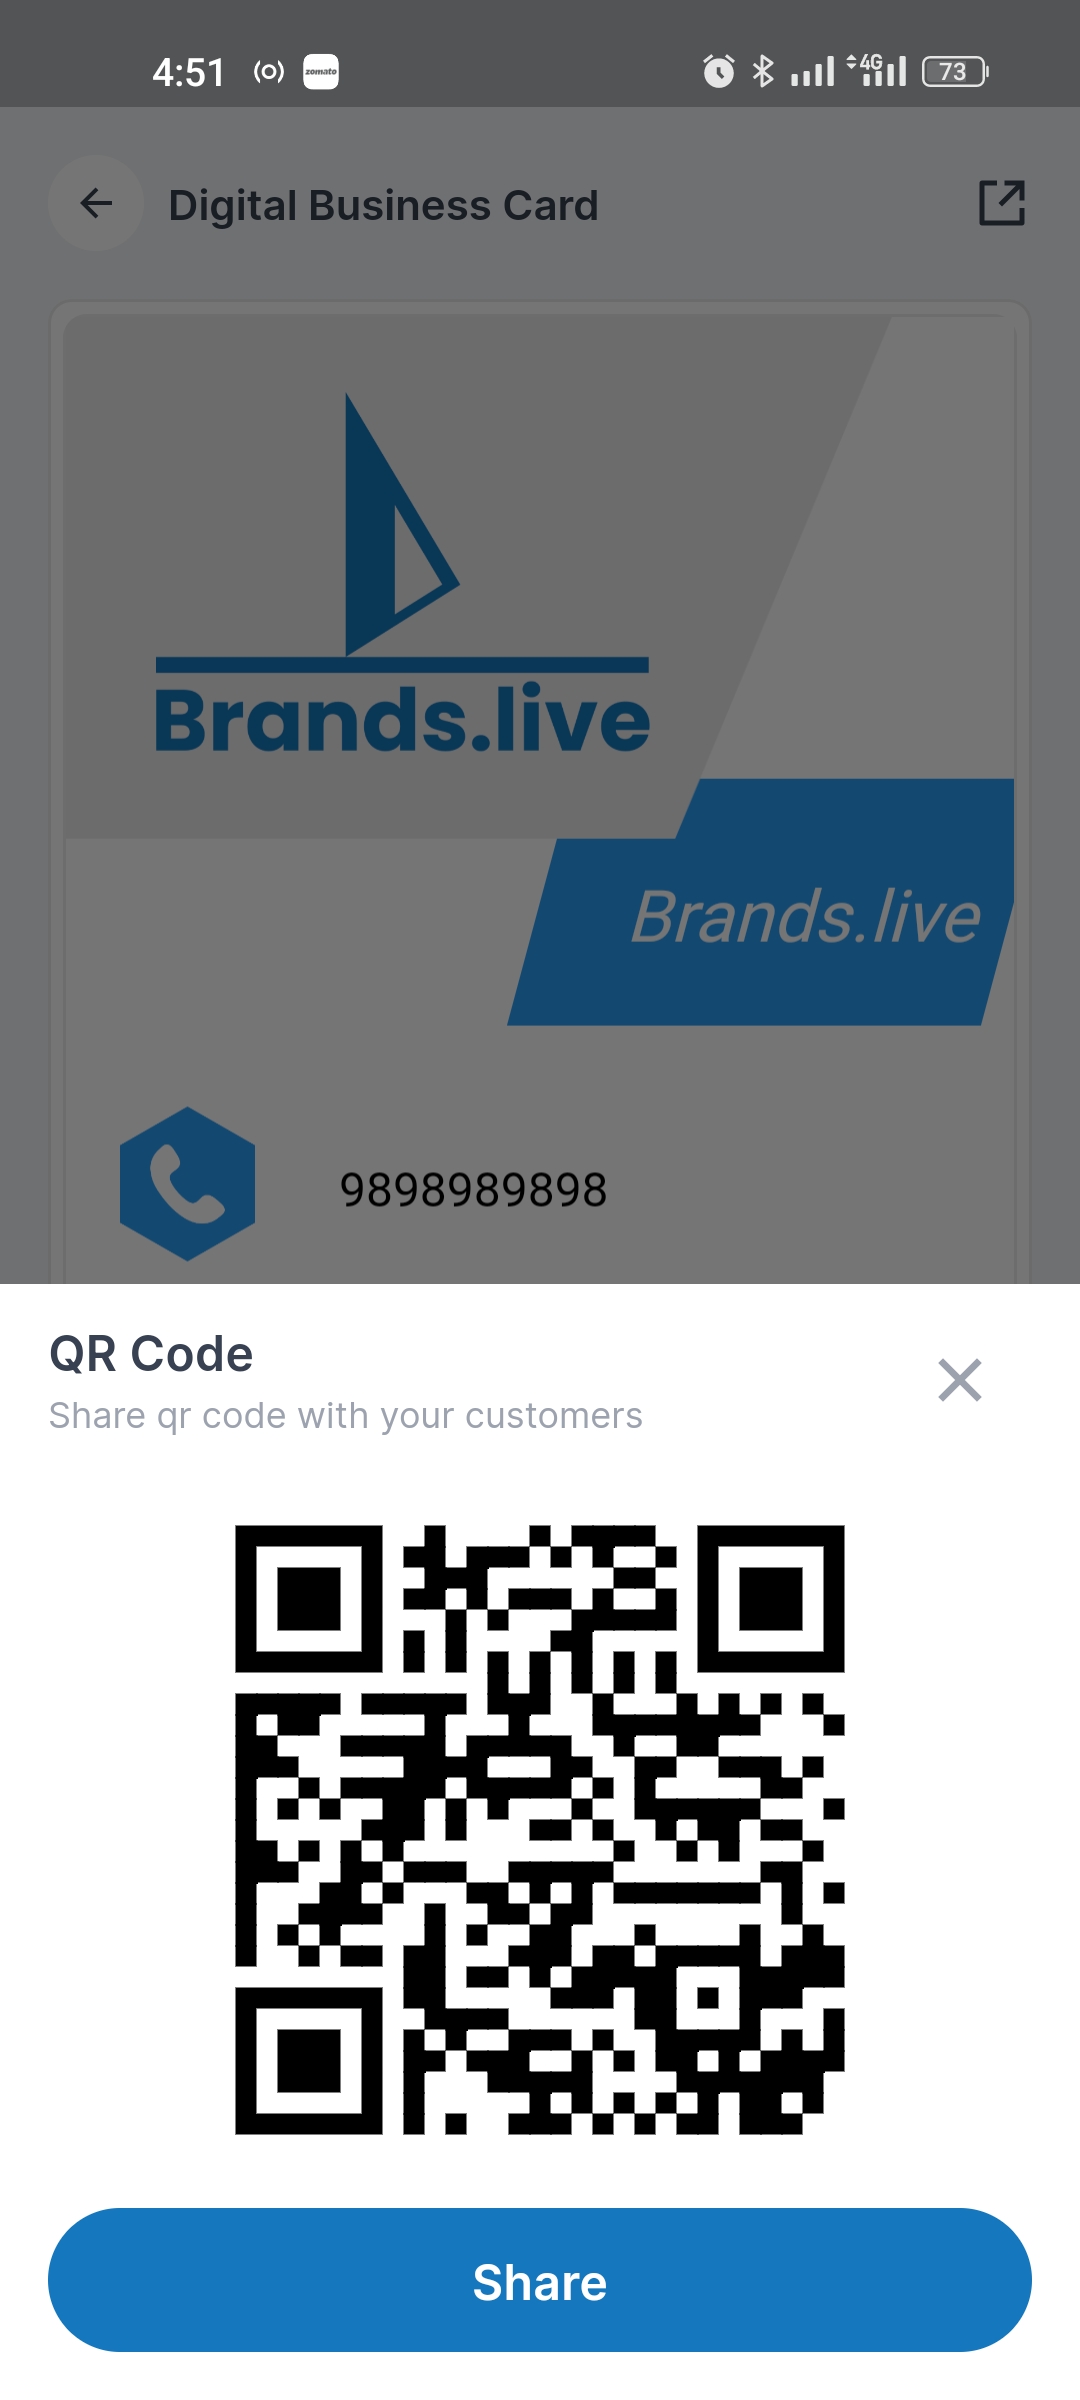 Share QR Code